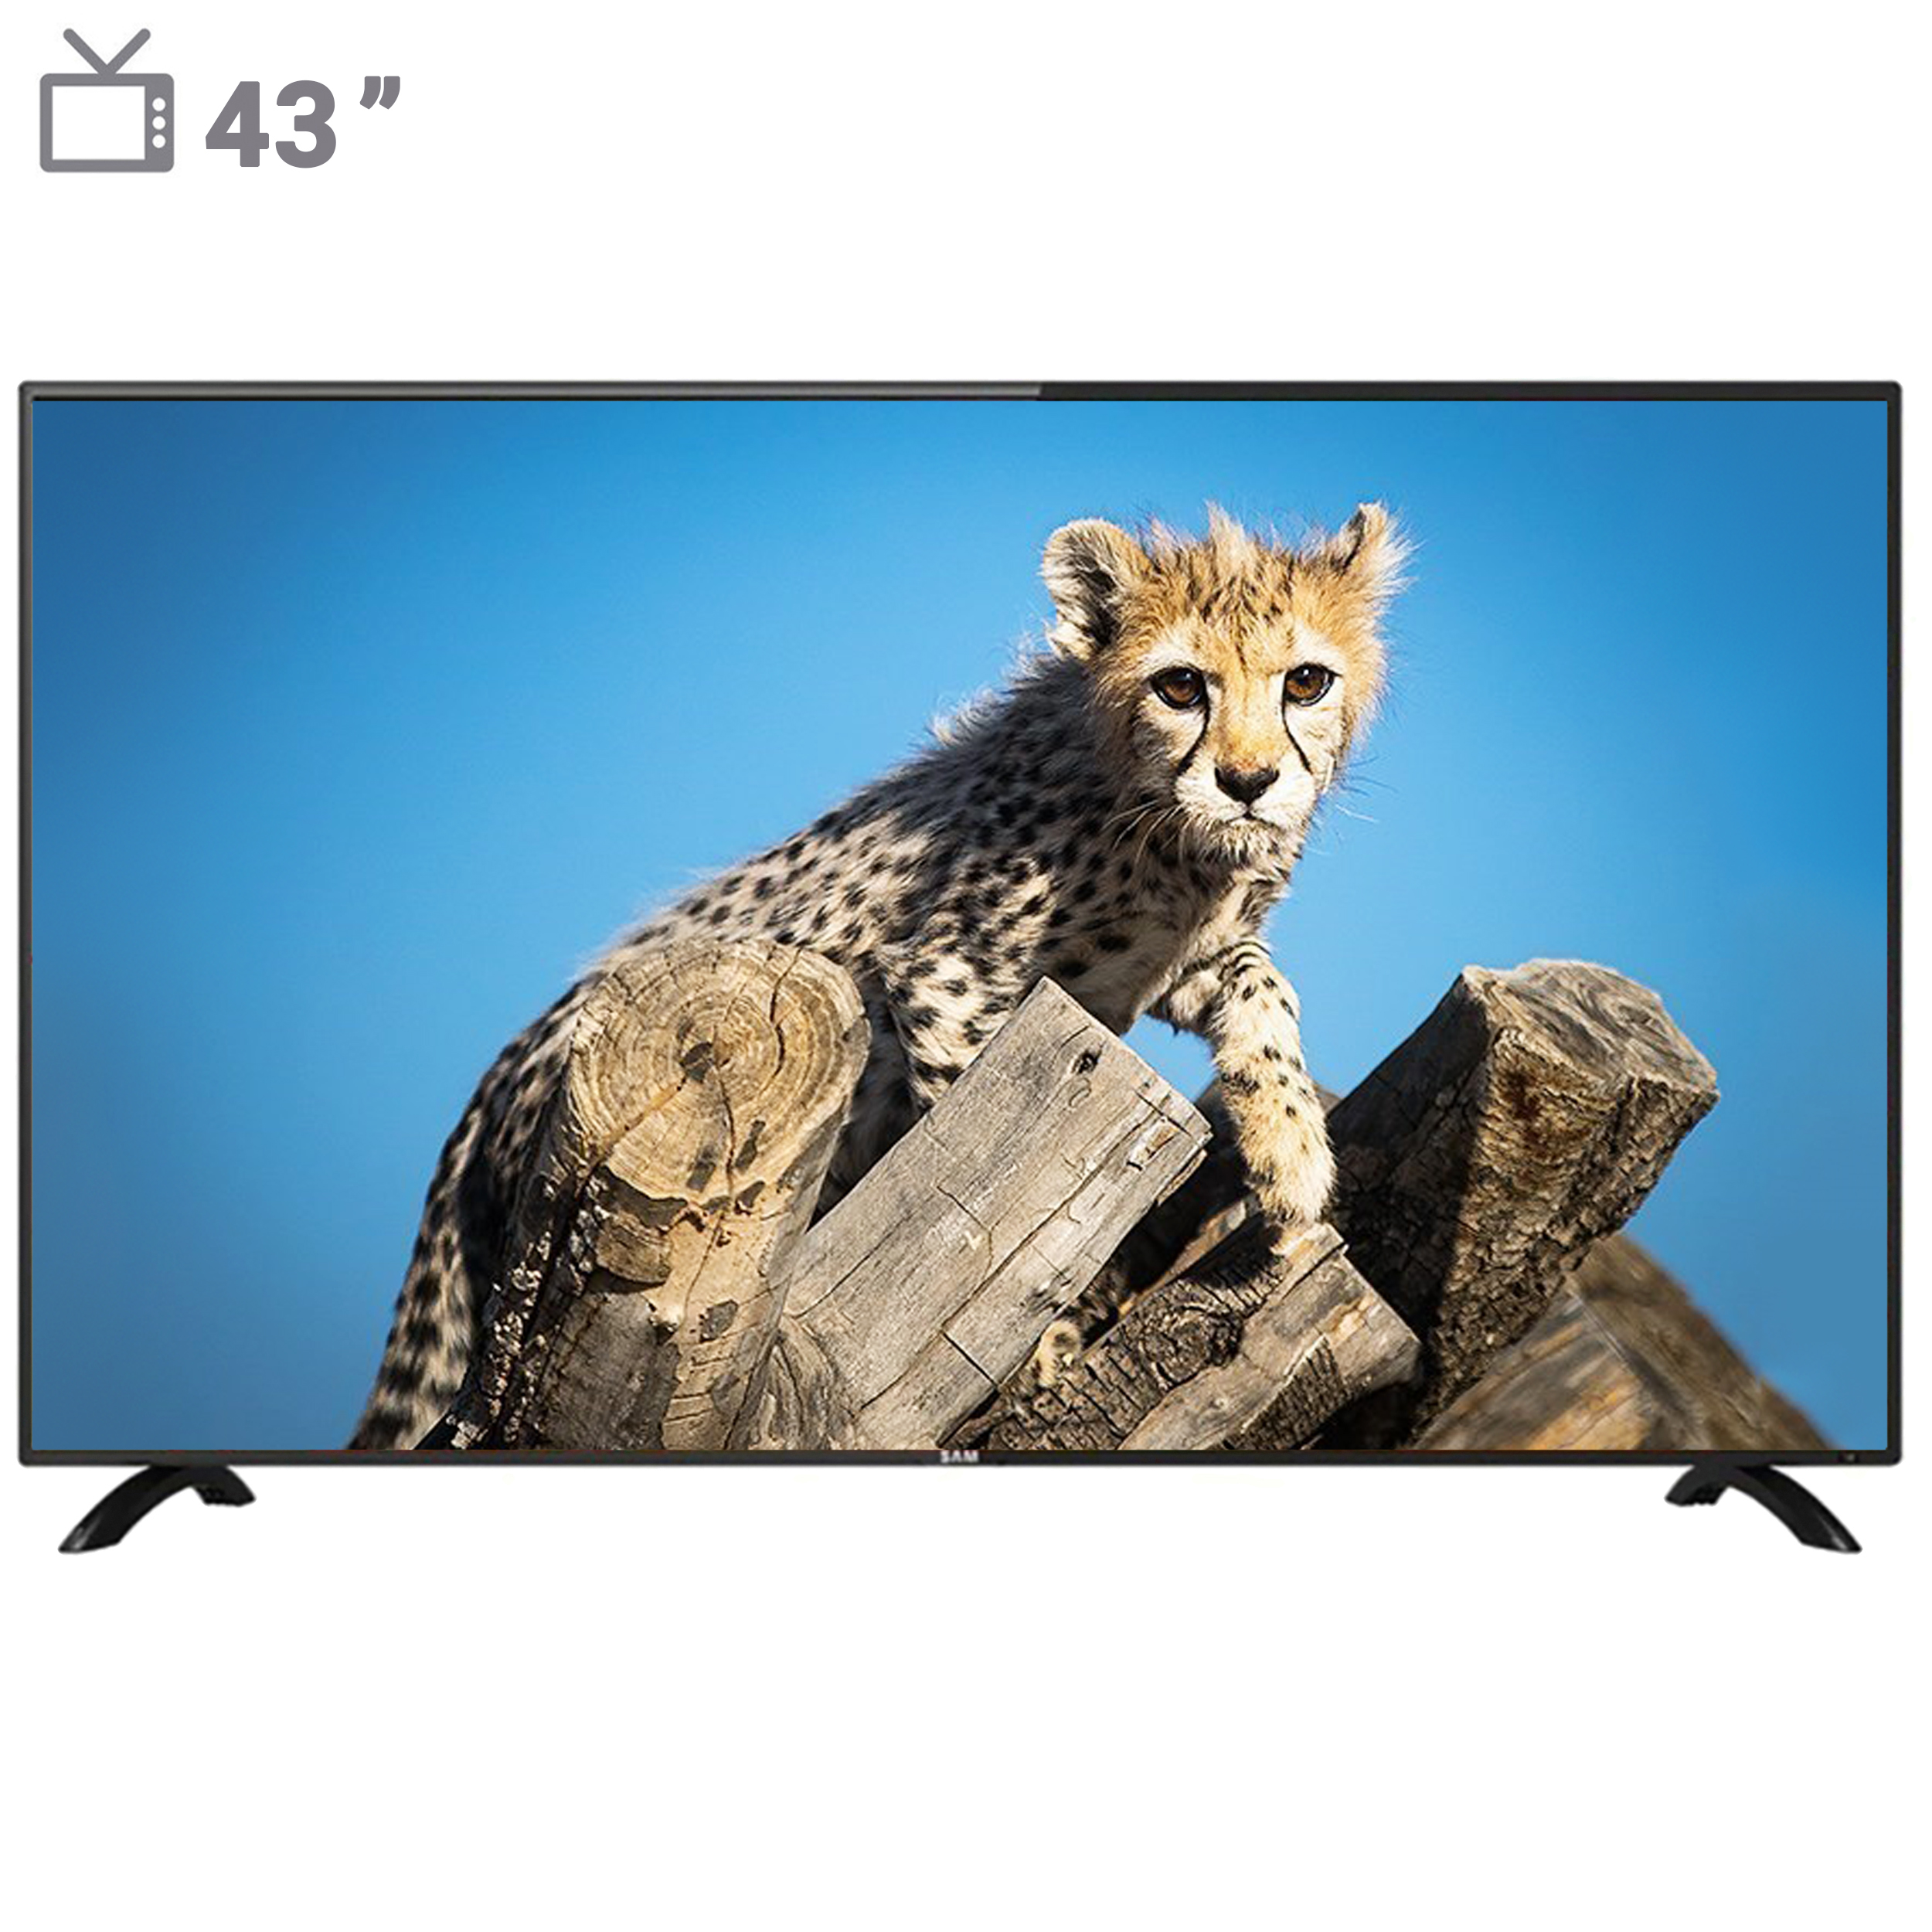 نکته خرید - قیمت روز تلویزیون ال ای دی هوشمند سام الکترونیک مدل UA43T5700TH سایز 43 اینچ خرید